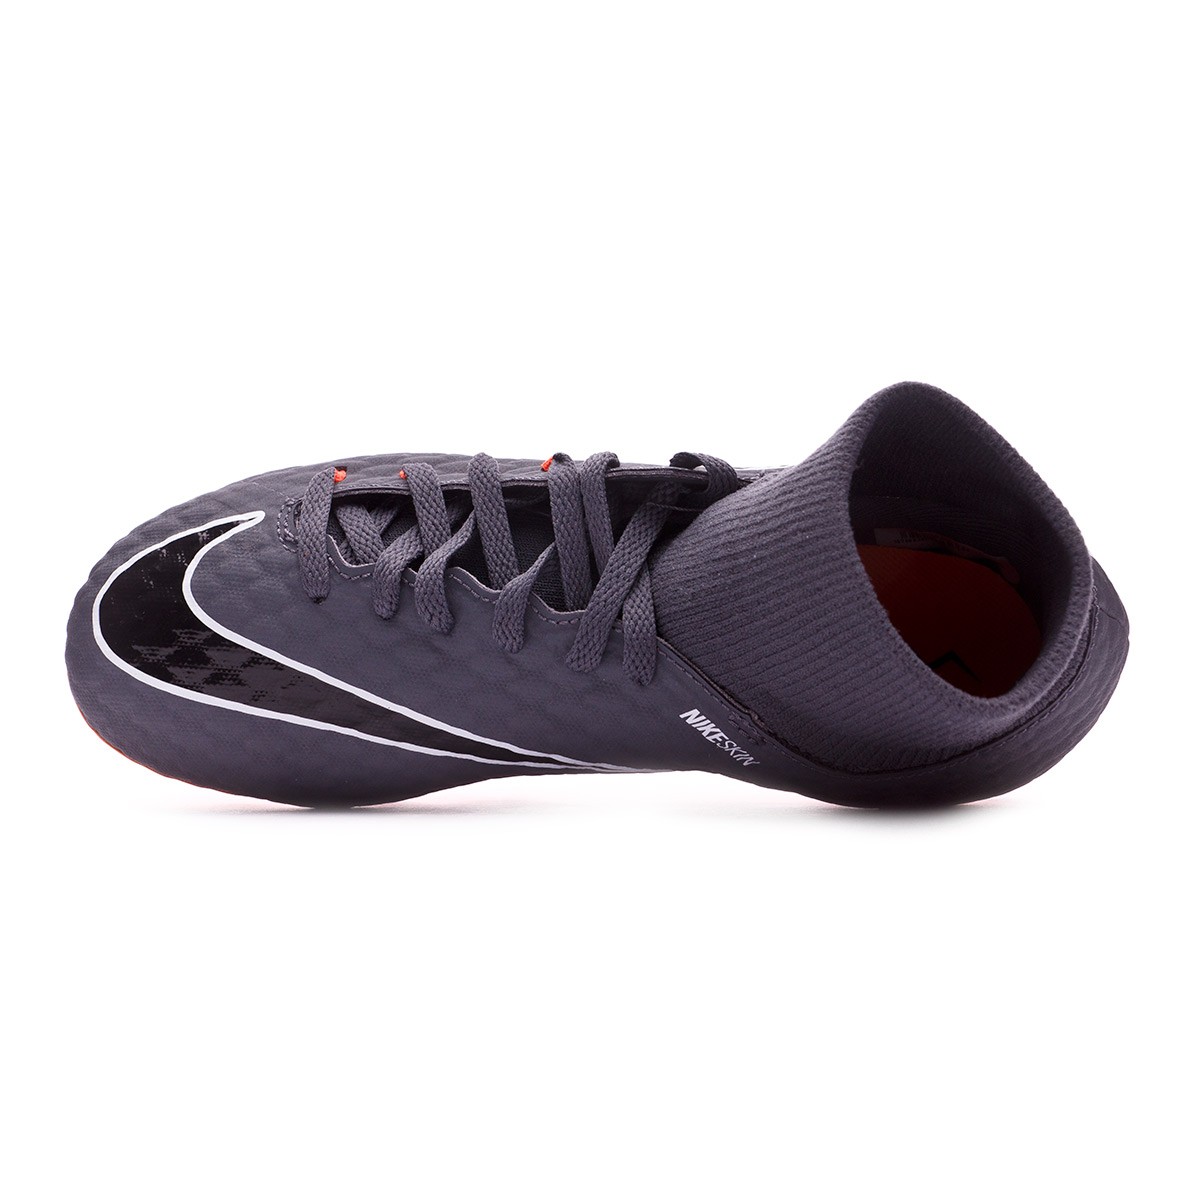 Da Calcio Scarpe Nike Hypervenom scarpe Calcietto 34jLAqR5